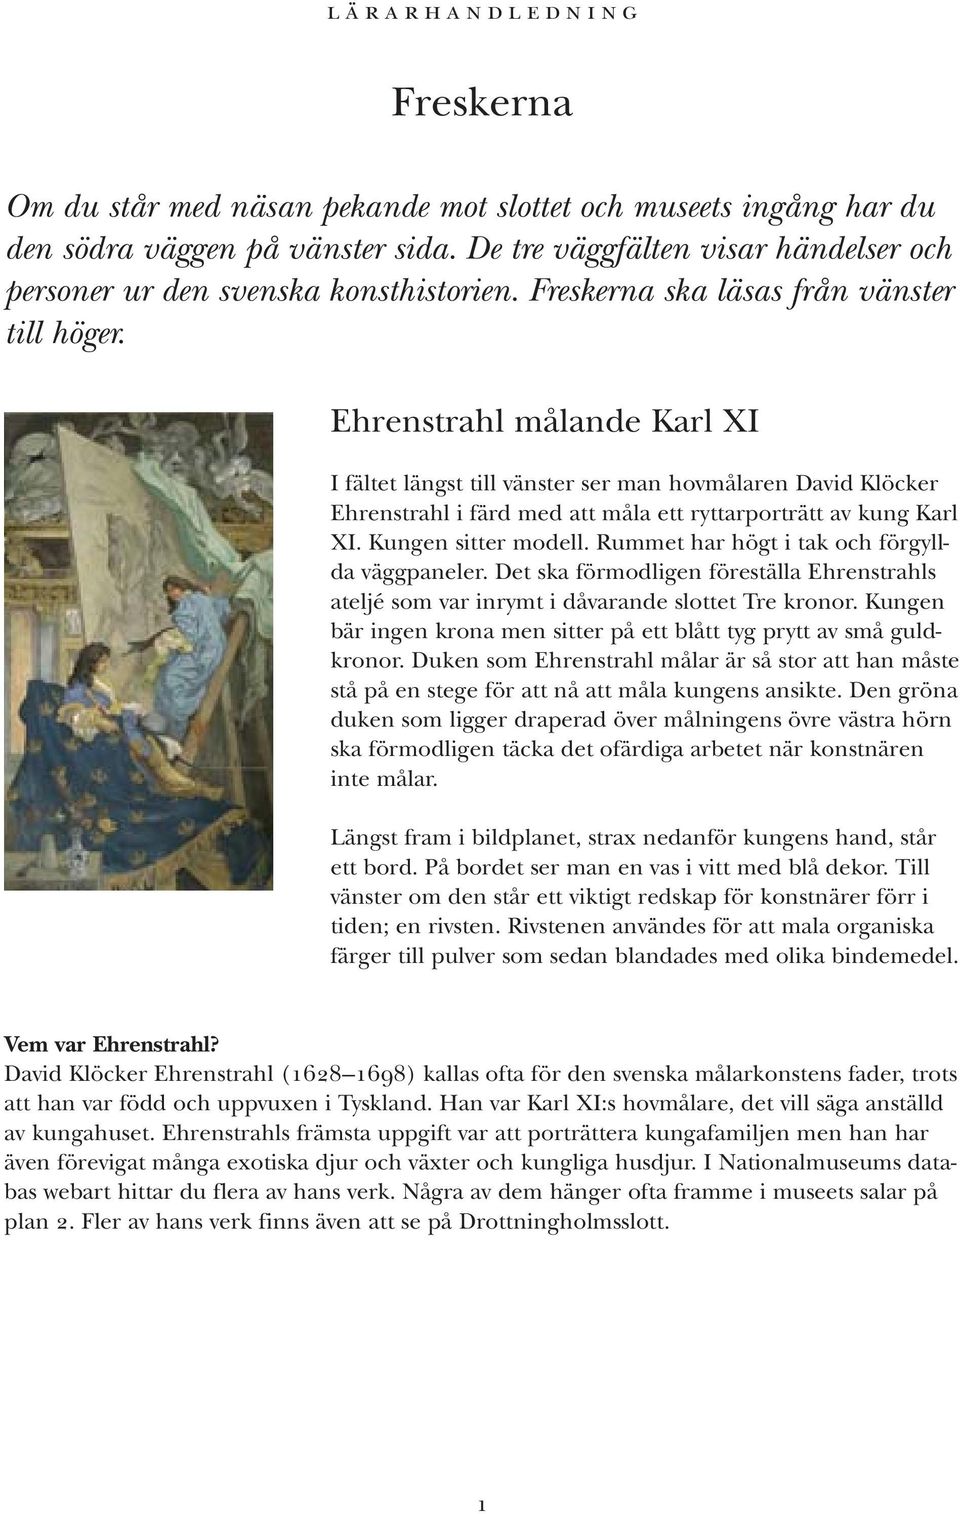 Ehrenstrahl målande Karl XI I fältet längst till vänster ser man hovmålaren David Klöcker Ehrenstrahl i färd med att måla ett ryttarporträtt av kung Karl XI. Kungen sitter modell.